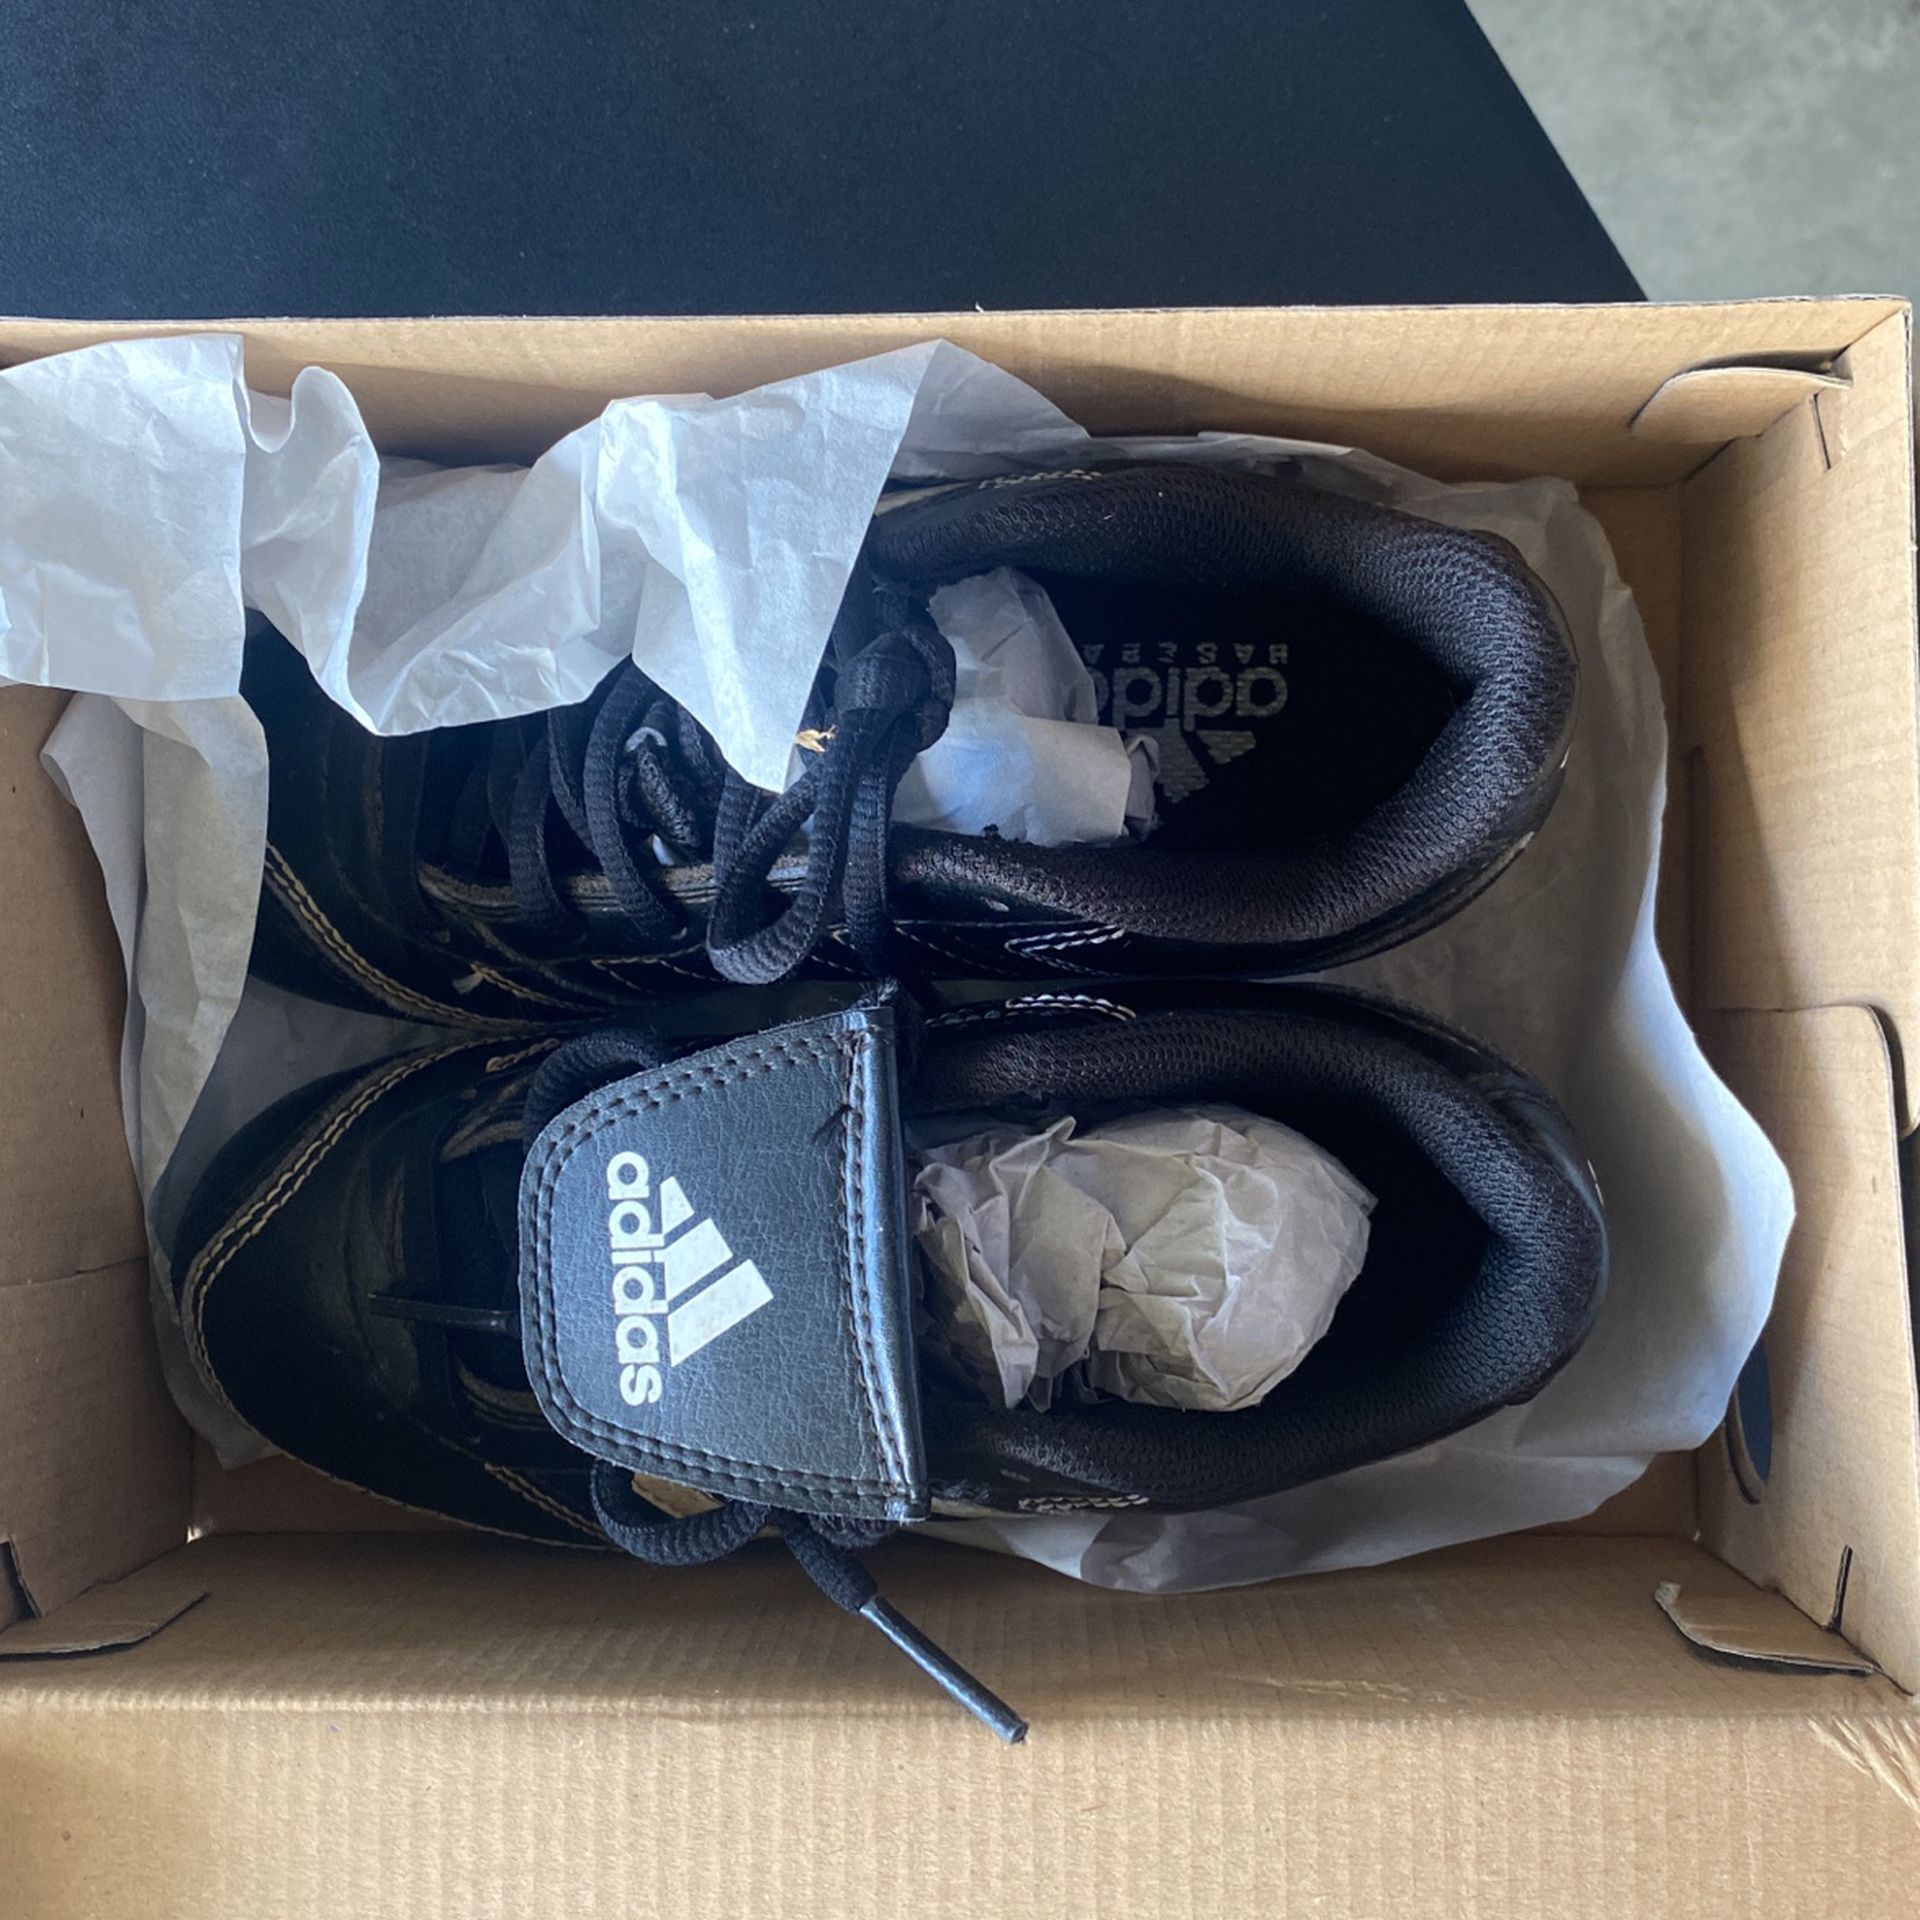 Kameel Je zal beter worden betekenis Adidas Kids Baseball Shoes Size 13K for Sale in Artesia, CA - OfferUp